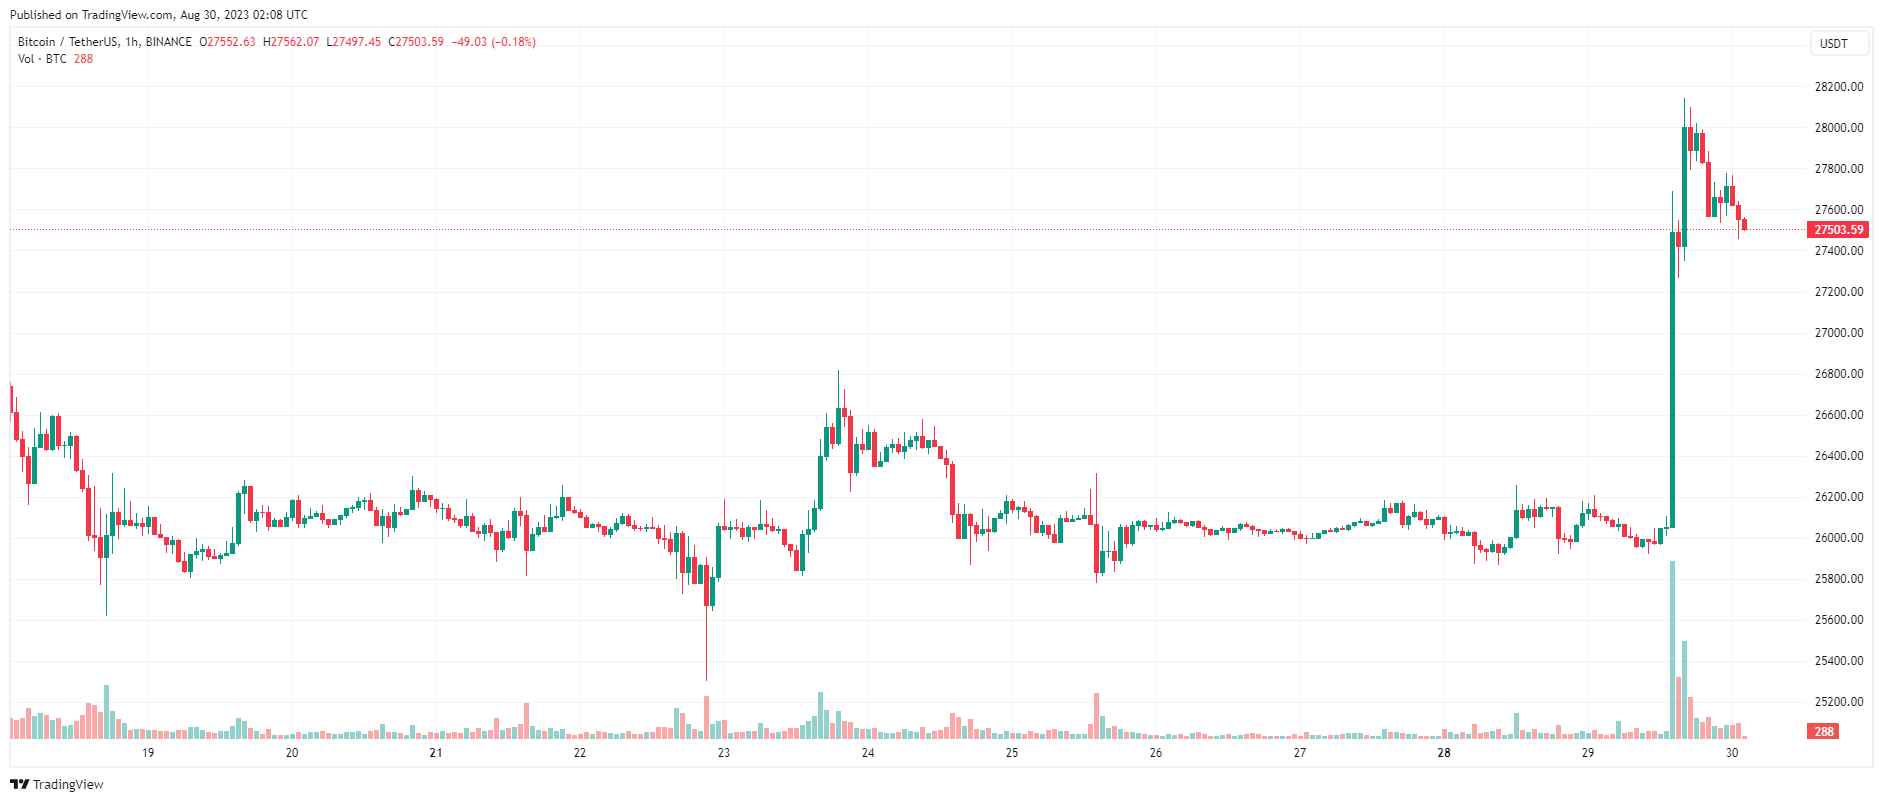 Giá Coin hôm nay 30/08: Bitcoin bật tăng chạm $ 28.000, altcoin khởi sắc khi Phố Wall leo dốc 3 phiên liên tiếp